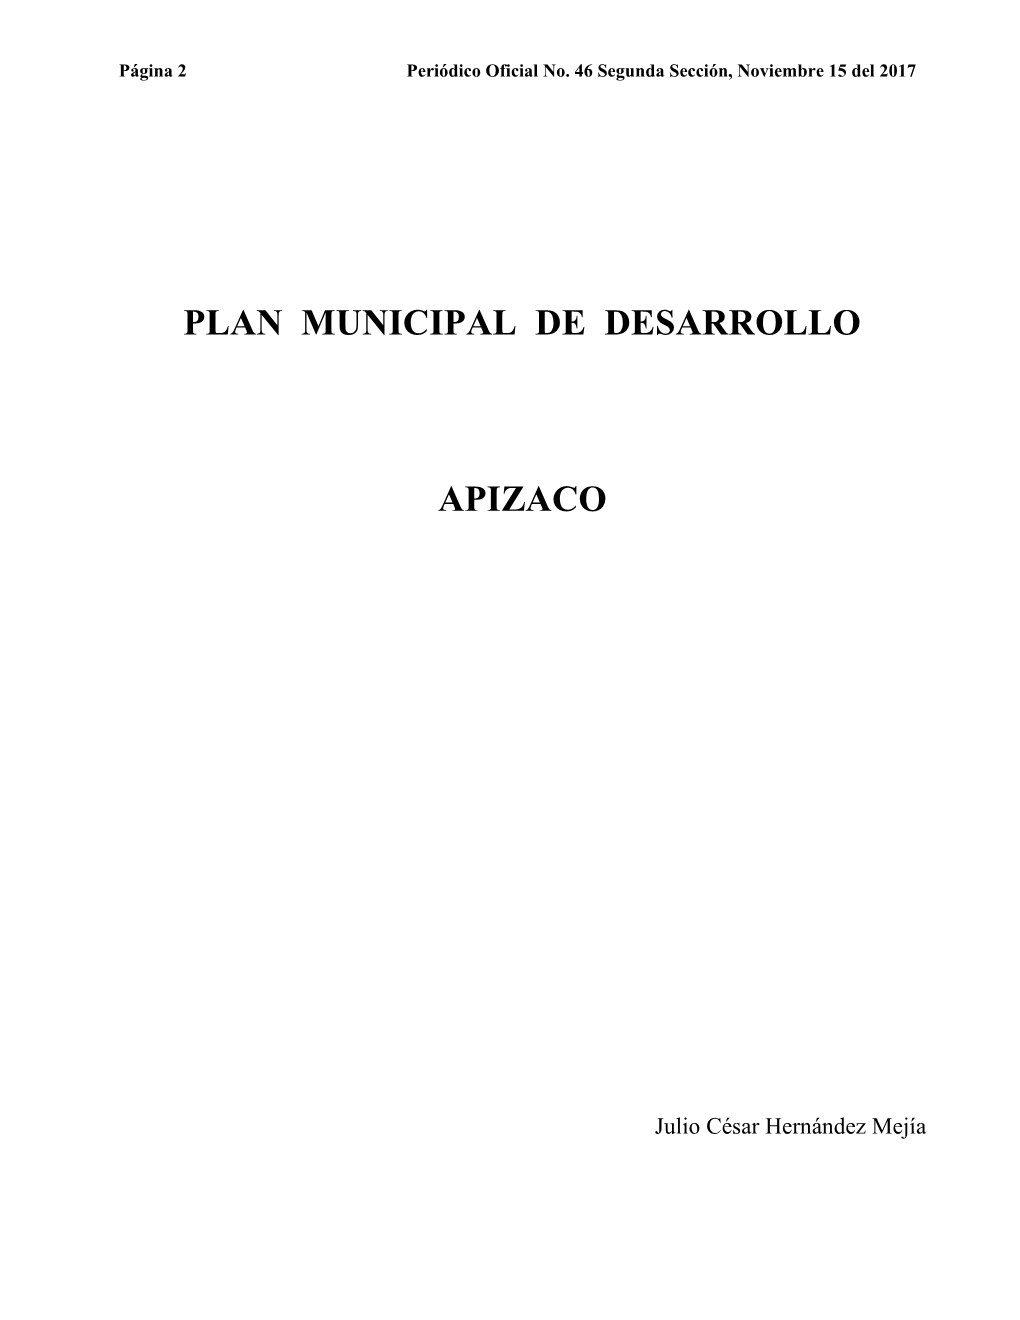 Plan Municipal De Desarrollo Apizaco 2017 - 2021